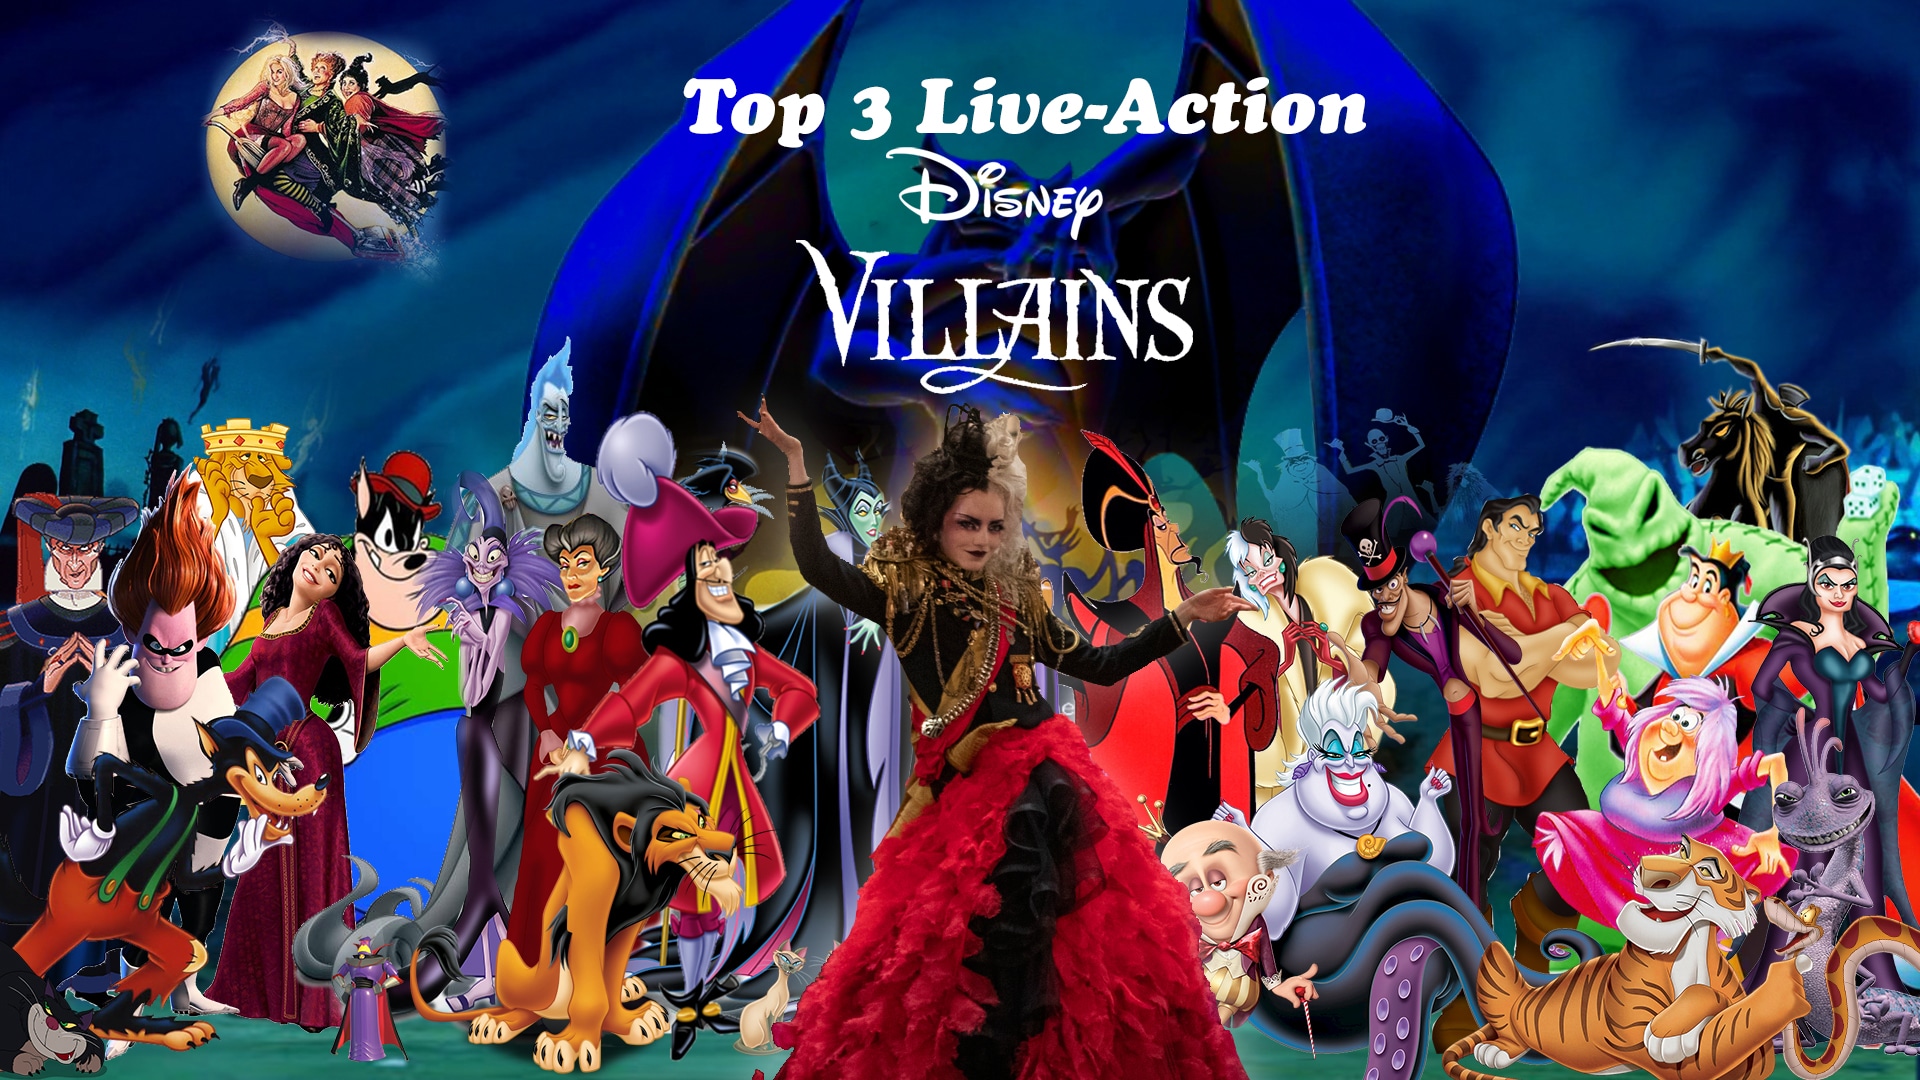 Disney Villains Top 3 for Live-Action